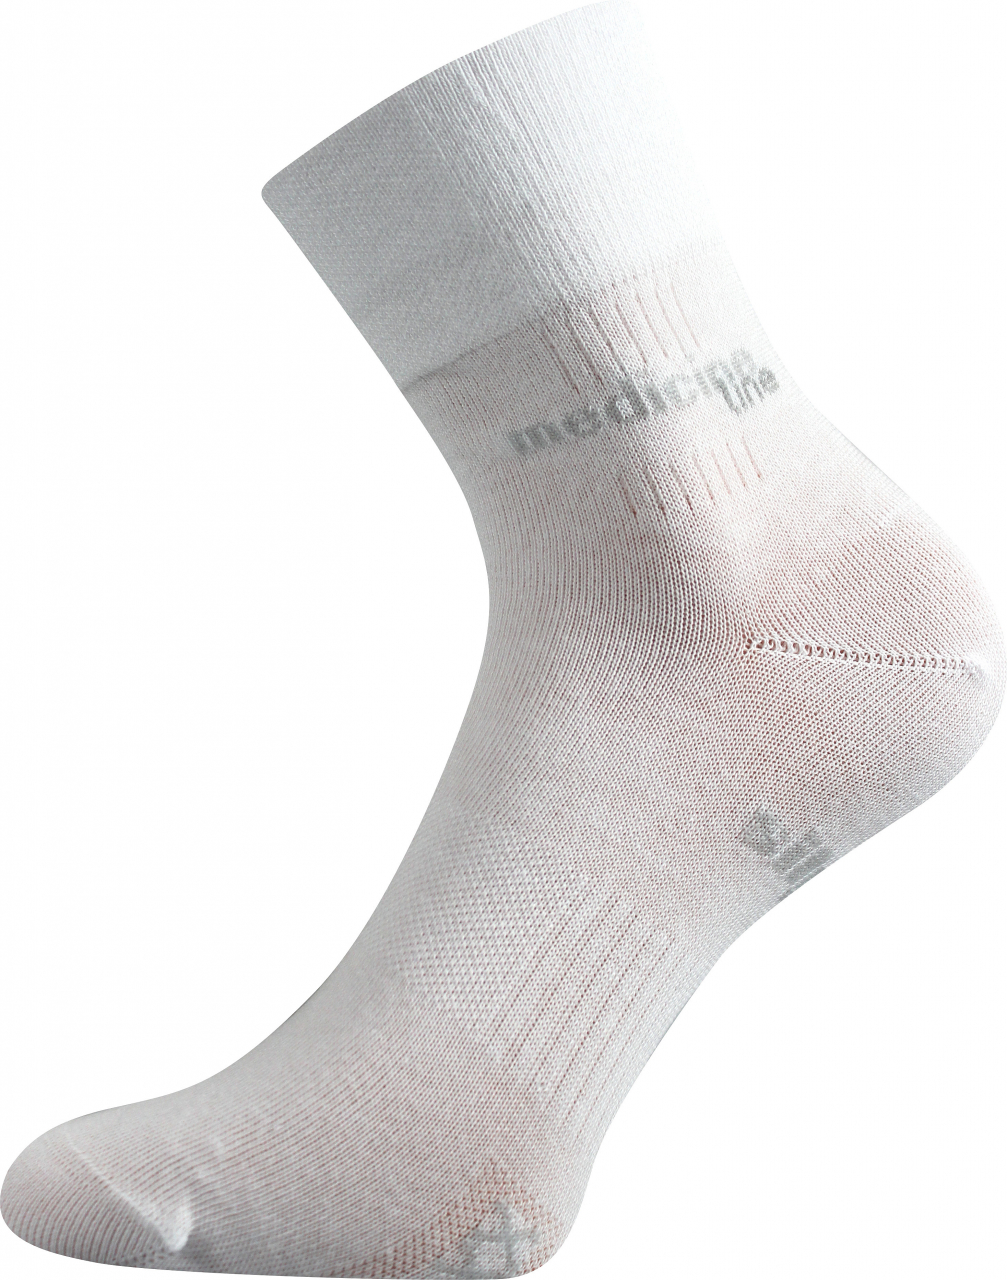 Ponožky zdravotní Mission Medicine - bílé, 35-38